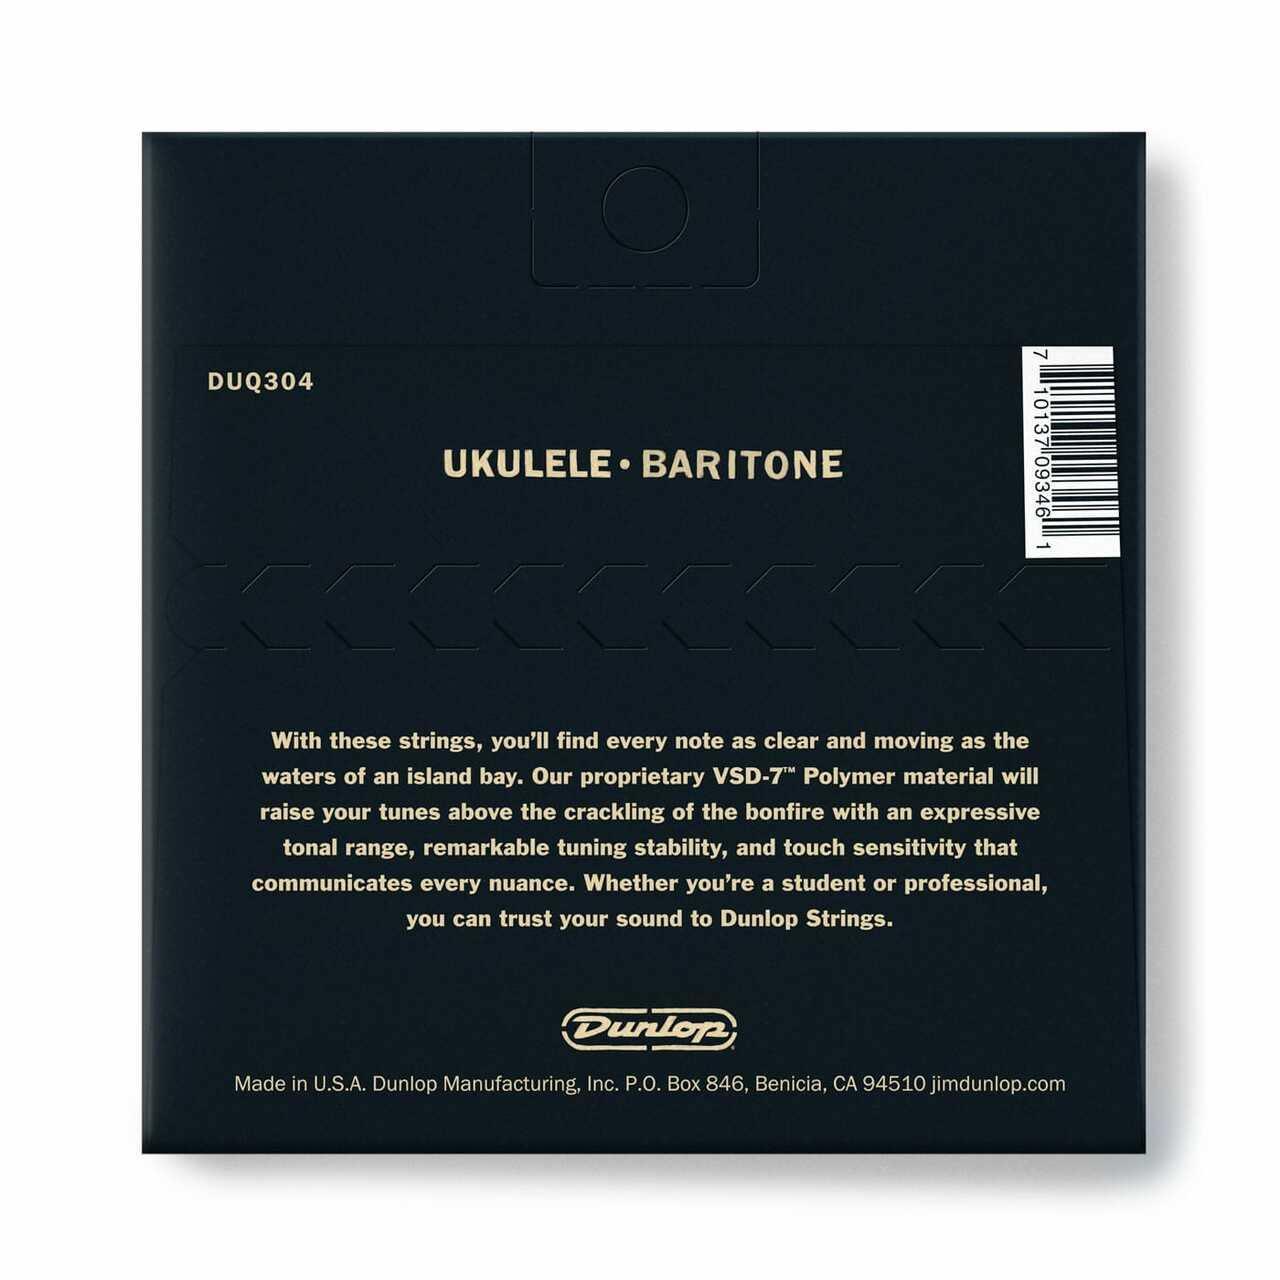 Dunlop Baritone Pro Ukulele - Strings - Ukulele by Jim Dunlop at Muso's Stuff